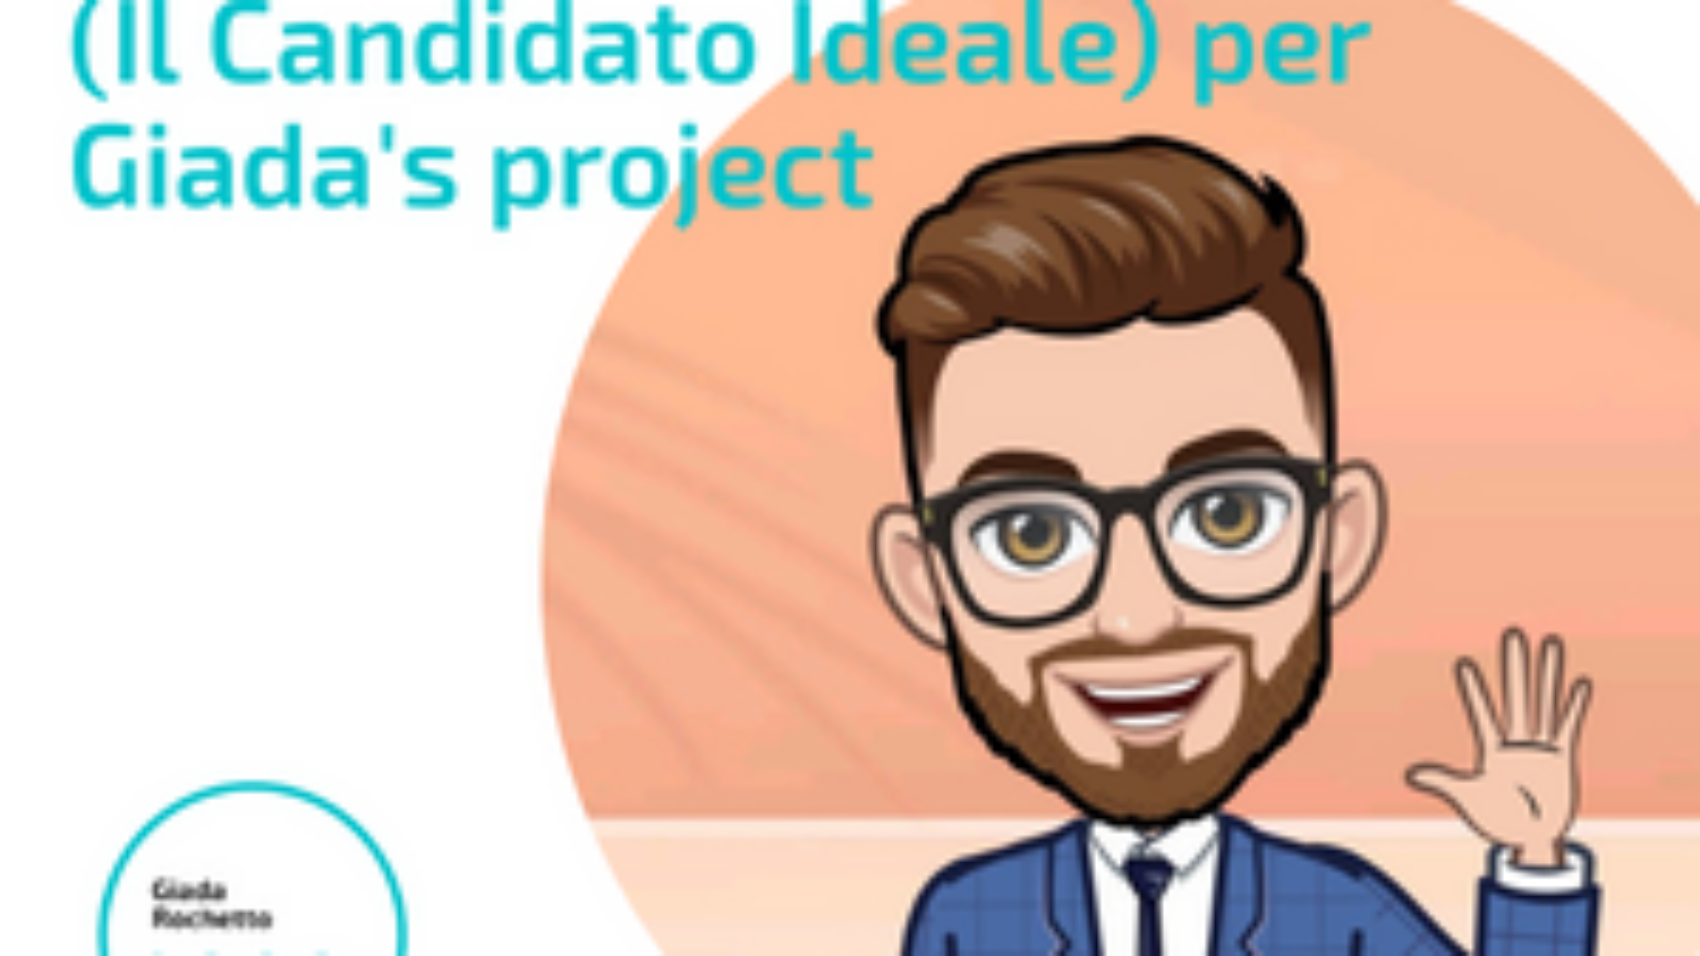 Angelo Rillo aka Il Candidato Ideale per GIada's Project - Interviste agli esperti delle HR e non solo